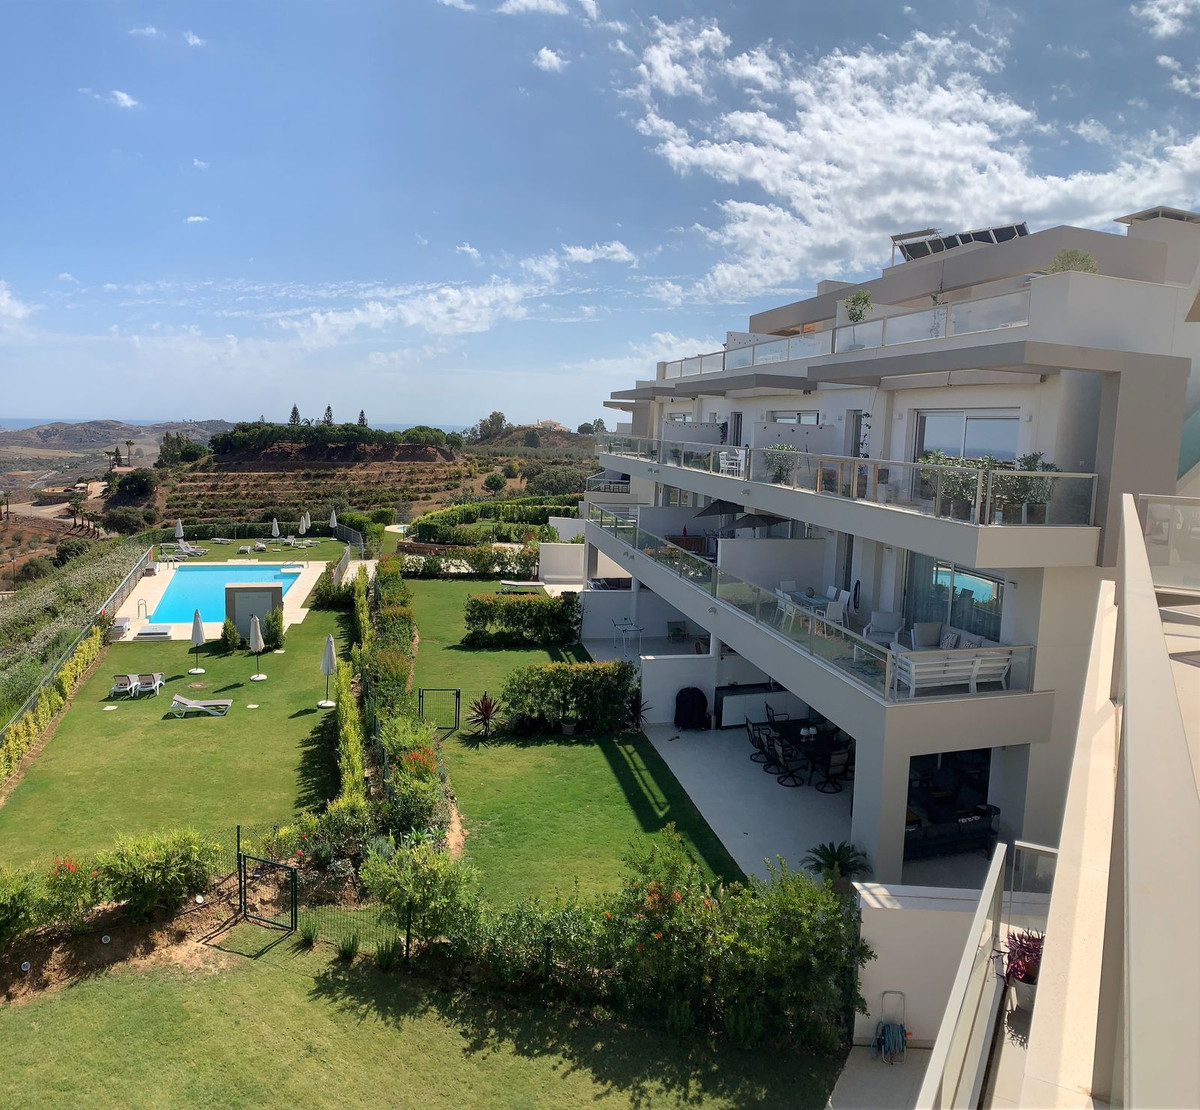 Penthouse in La Cala de Mijas, Costa del Sol, Málaga on Costa del Sol For Sale